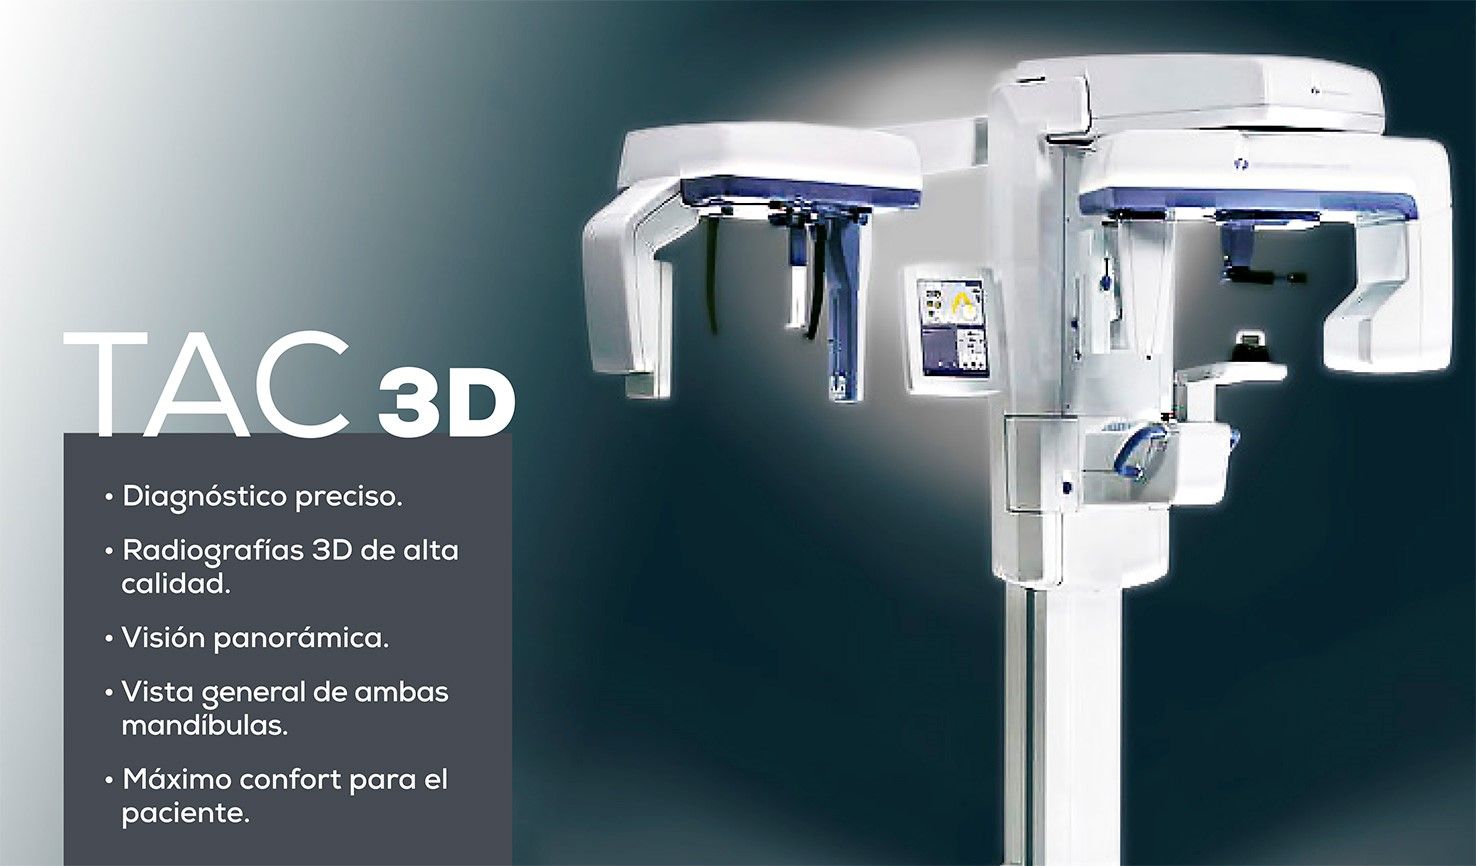 Diagnóstico preciso. Radiografías 3d de alta calidad. Visión panorámica. Vista general de ambas mandíbulas- Máximo confort para el paciente.